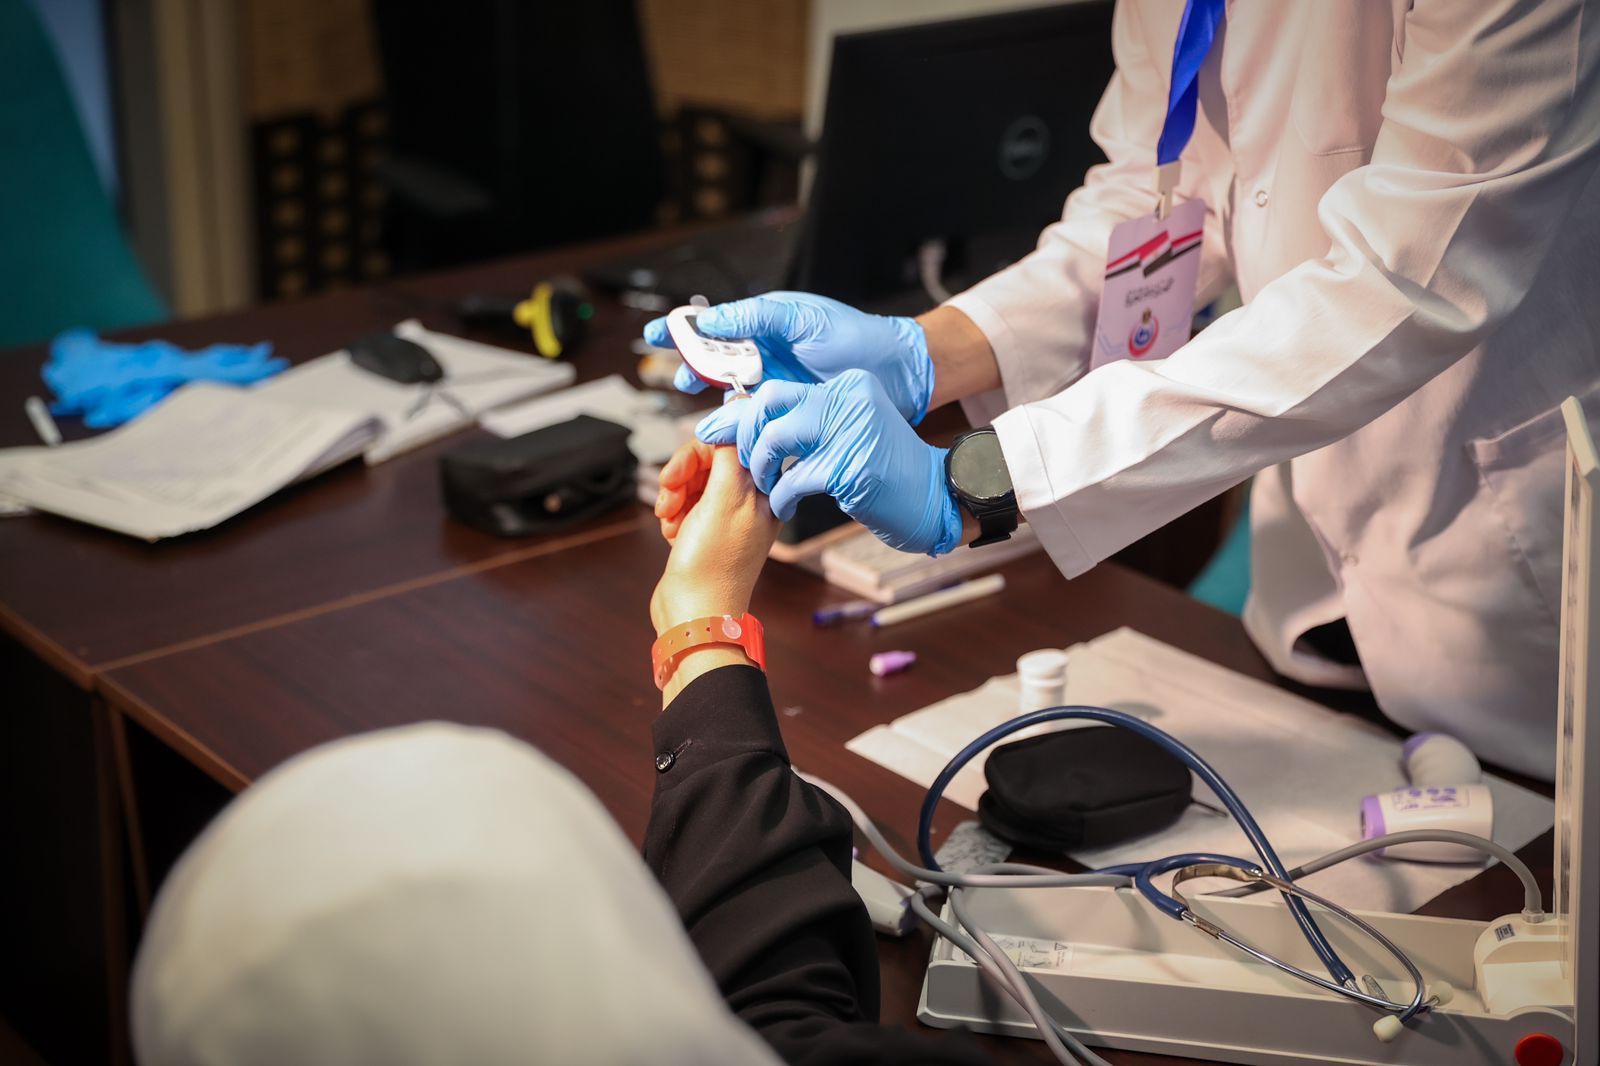 الصحة: عيادات بعثة الحج الطبية قدمت خدمات الكشف والعلاج لأكثر من 4 آلاف من الحجاج المصريين في مكة والمدينة